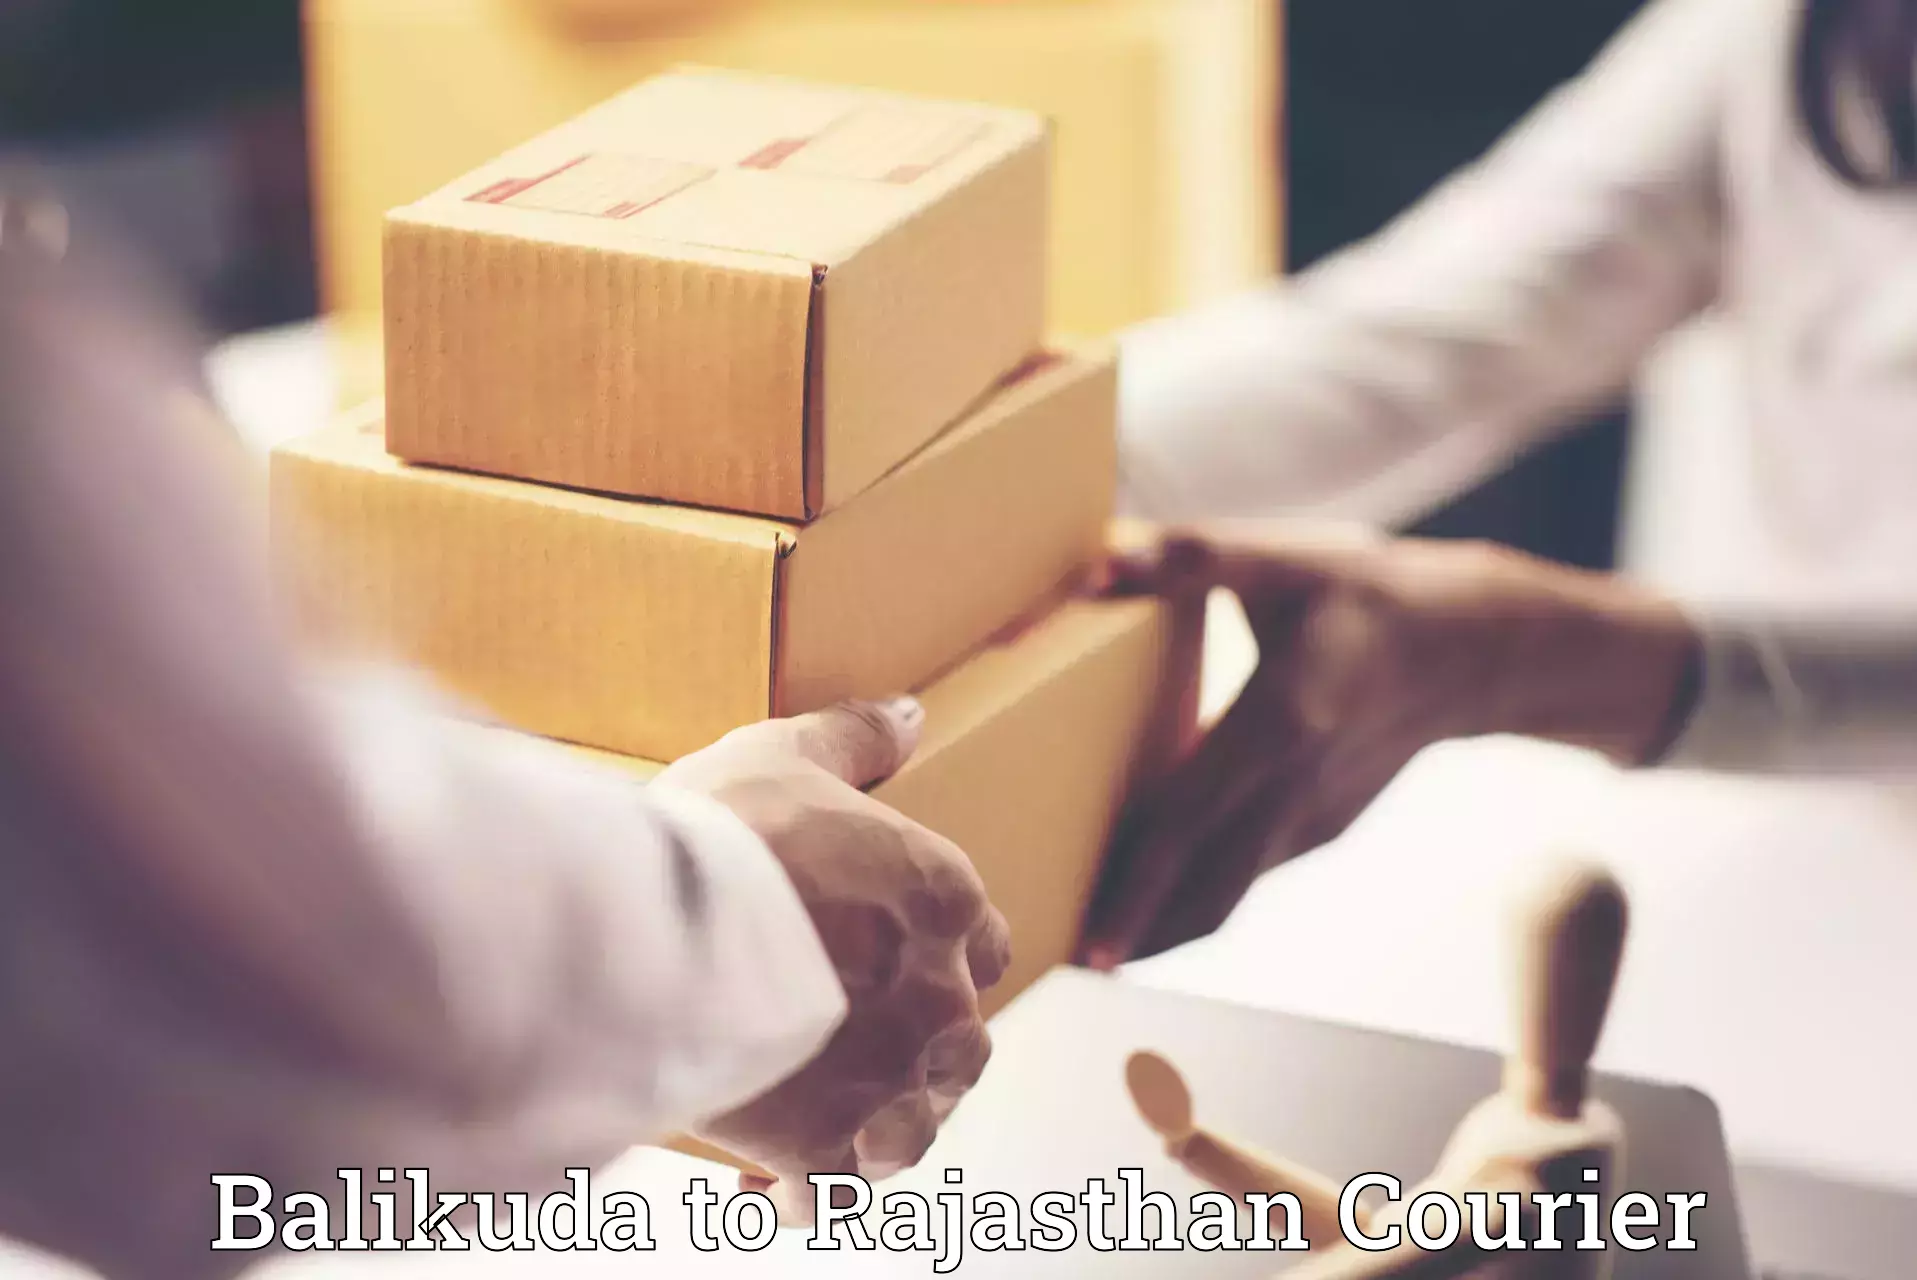 Furniture transport solutions Balikuda to Rajasthan